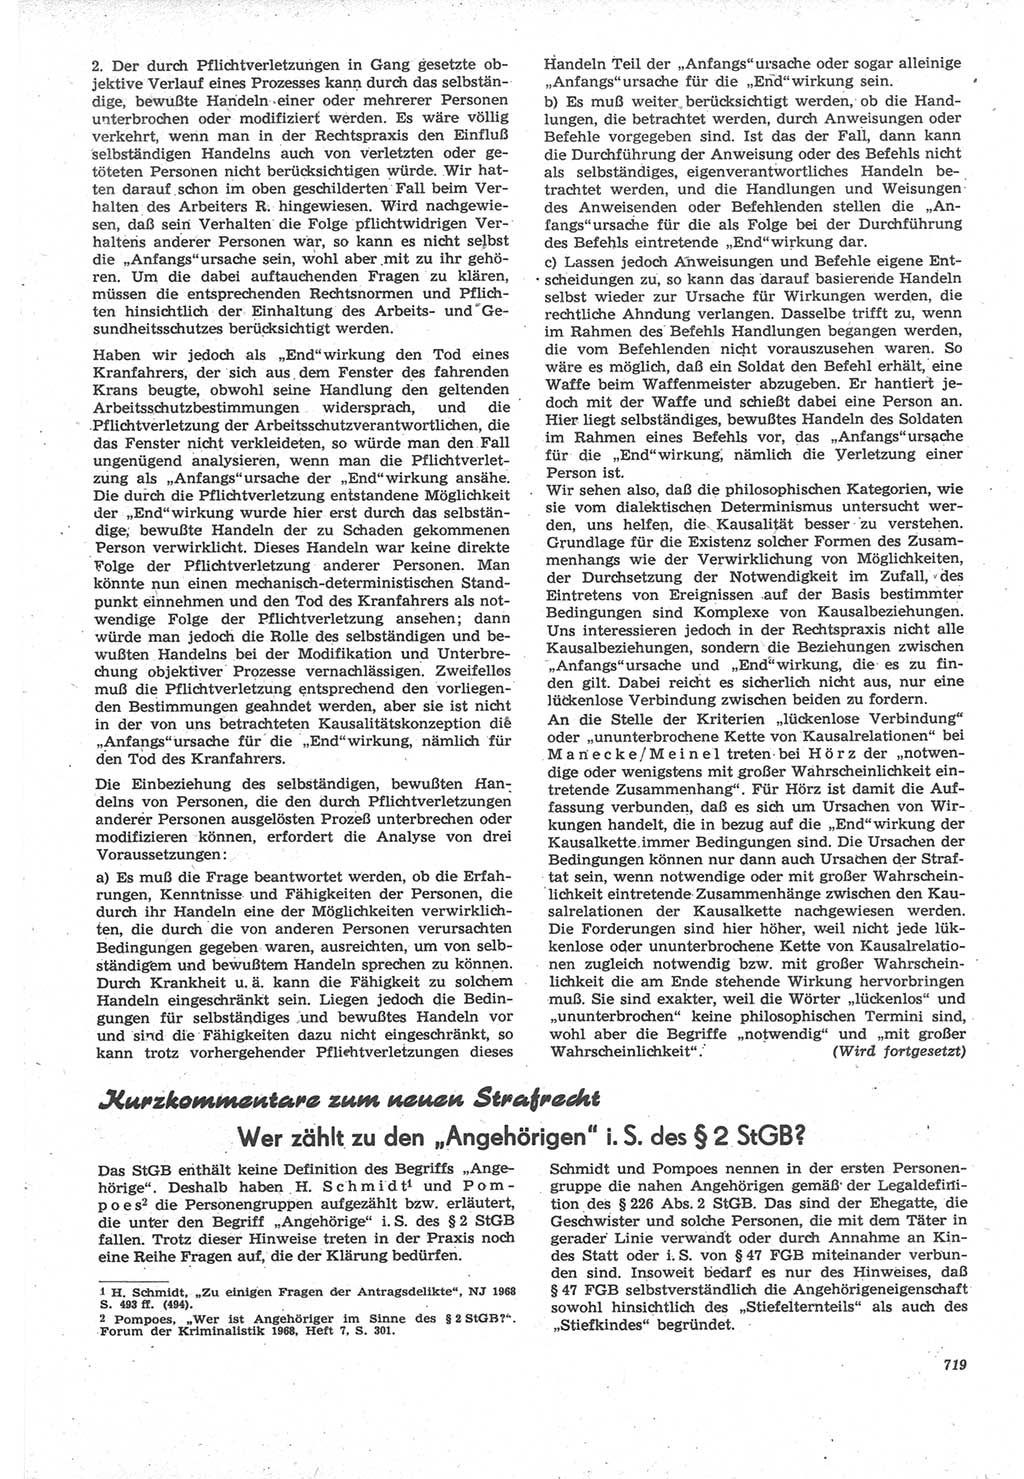 Neue Justiz (NJ), Zeitschrift für Recht und Rechtswissenschaft [Deutsche Demokratische Republik (DDR)], 22. Jahrgang 1968, Seite 719 (NJ DDR 1968, S. 719)